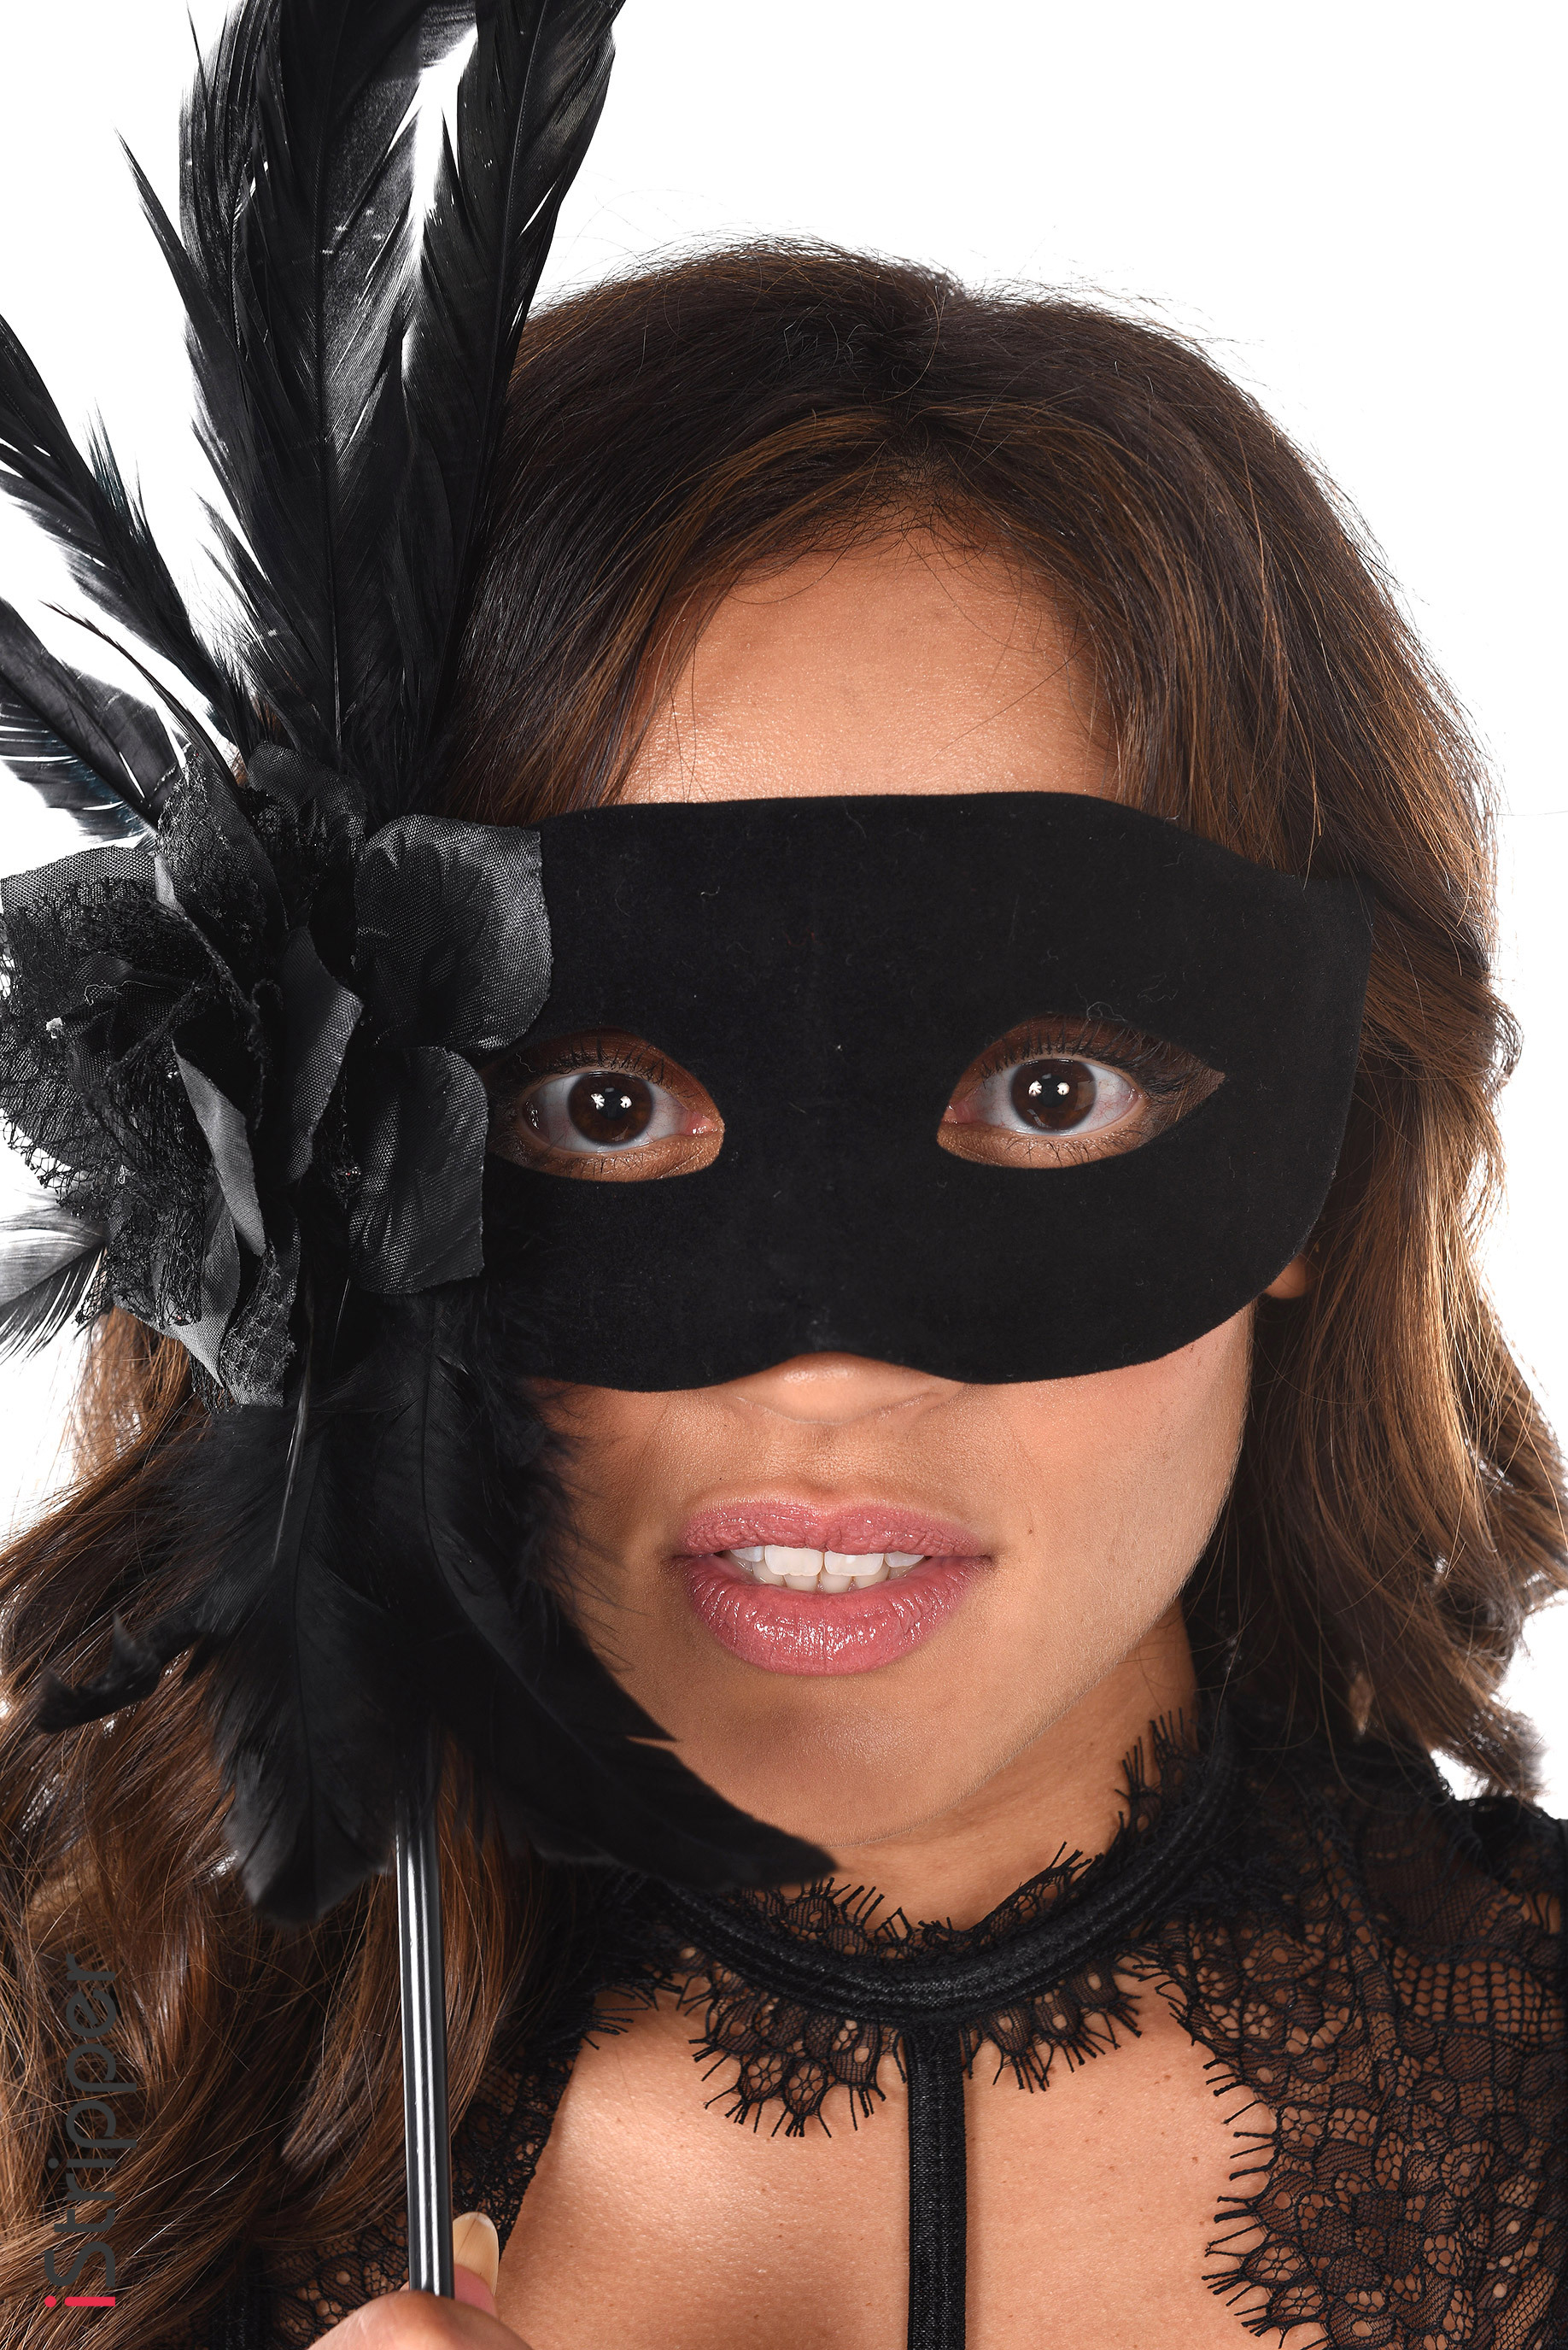 Naomi Victoria Drop The Mask baddest harley babes desktop screensaver sites for men